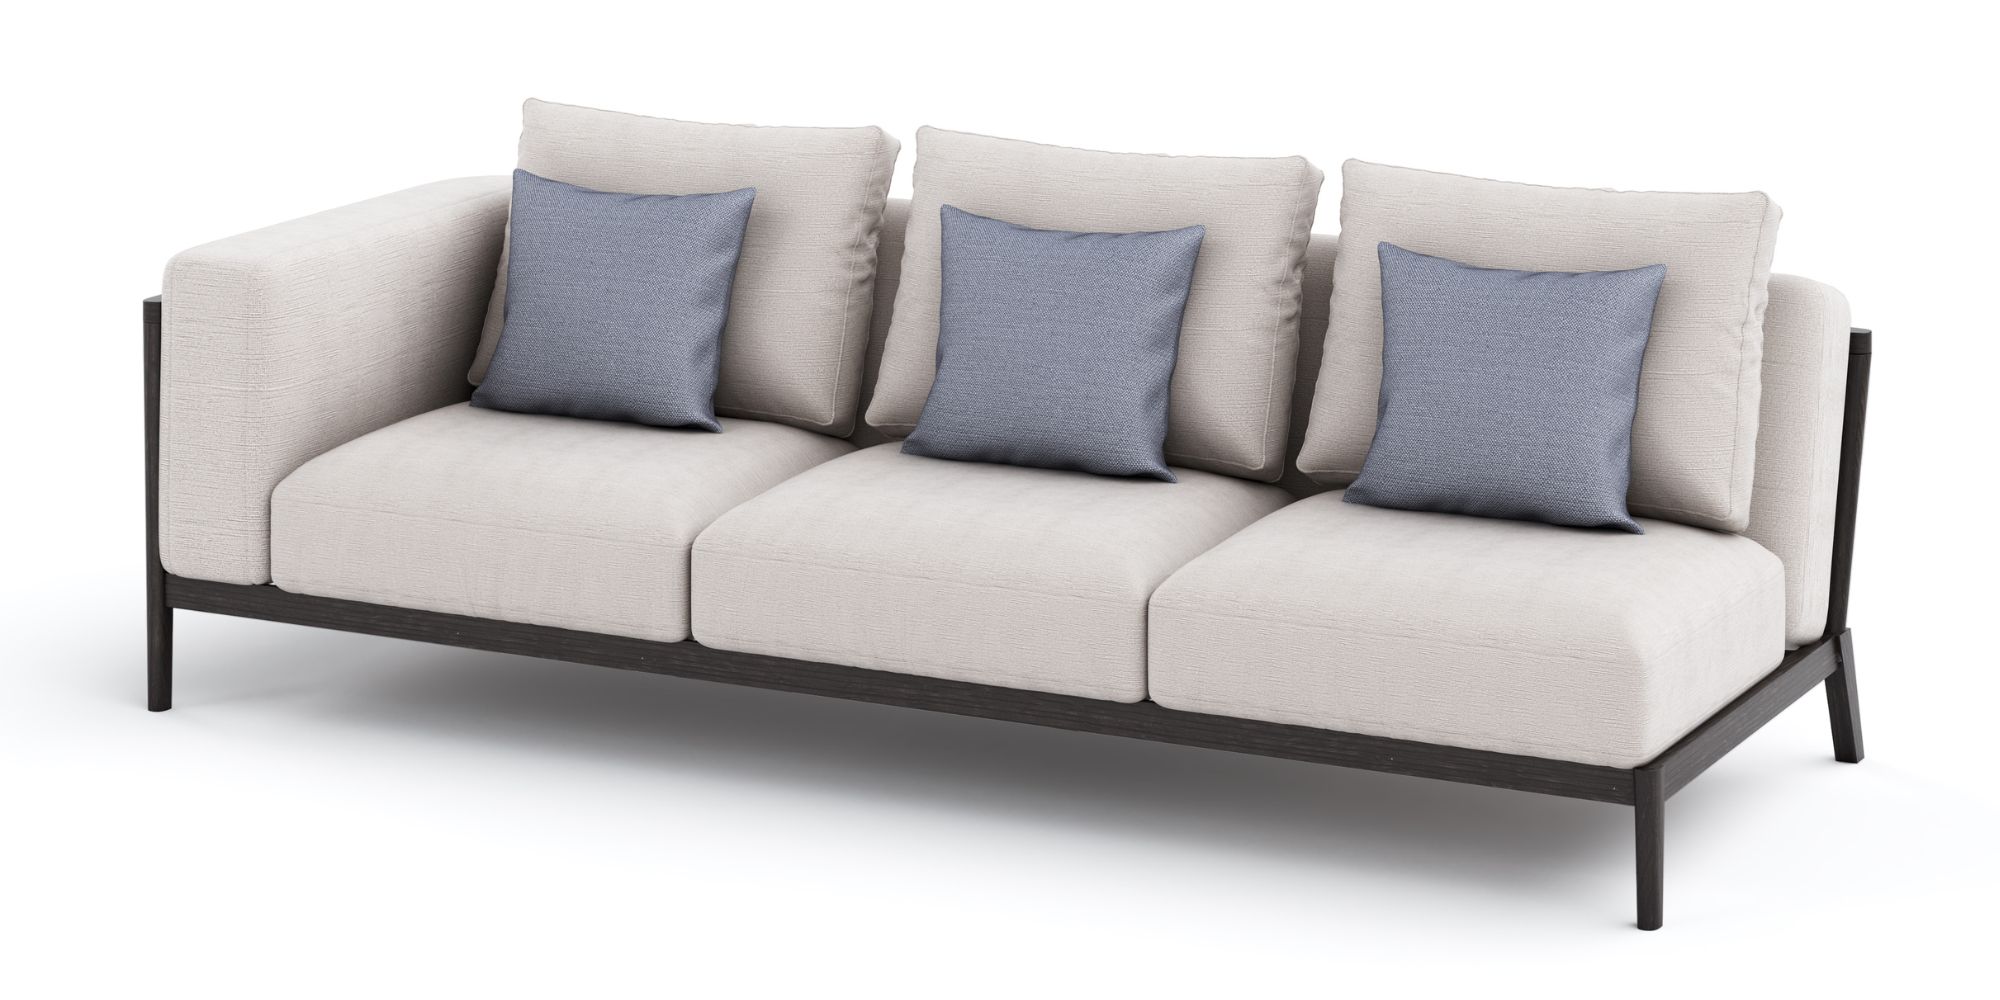 Coronet Modular Sofa in Outdoor Modular Sofas for Coronet collection